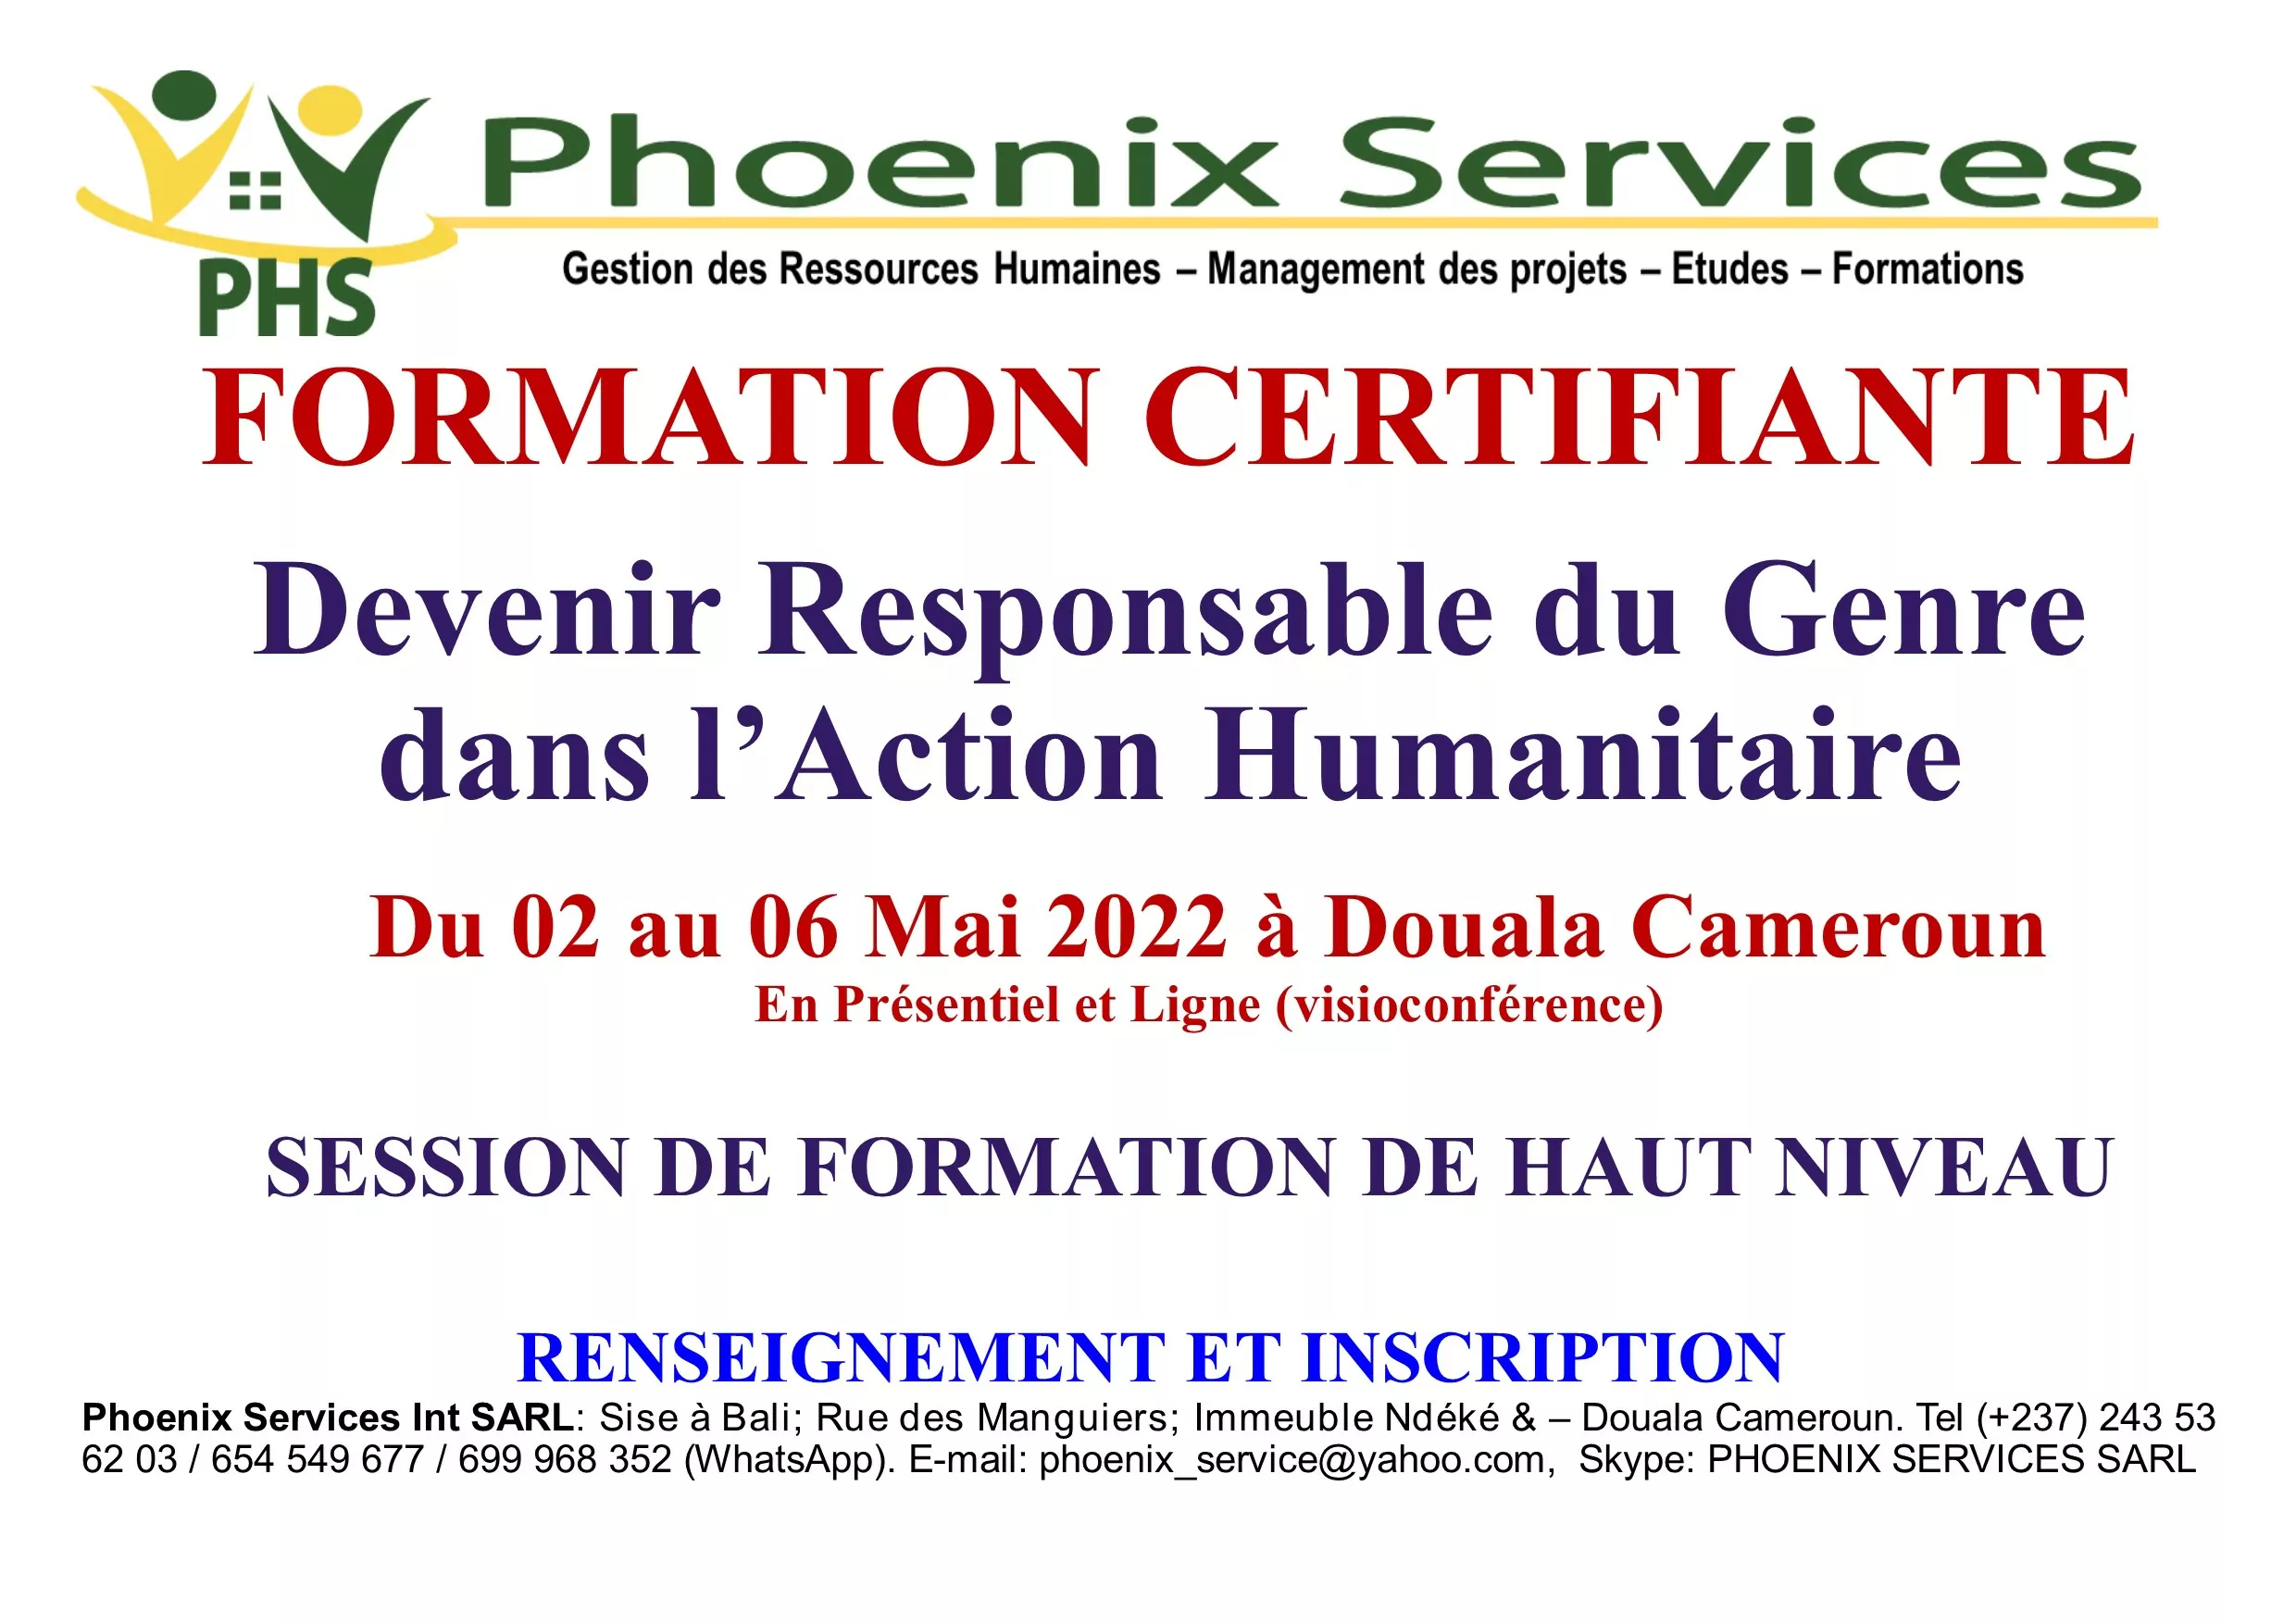 Formation Certifiante : Devenir Responsable du Genre dans l’Action Humanitaire